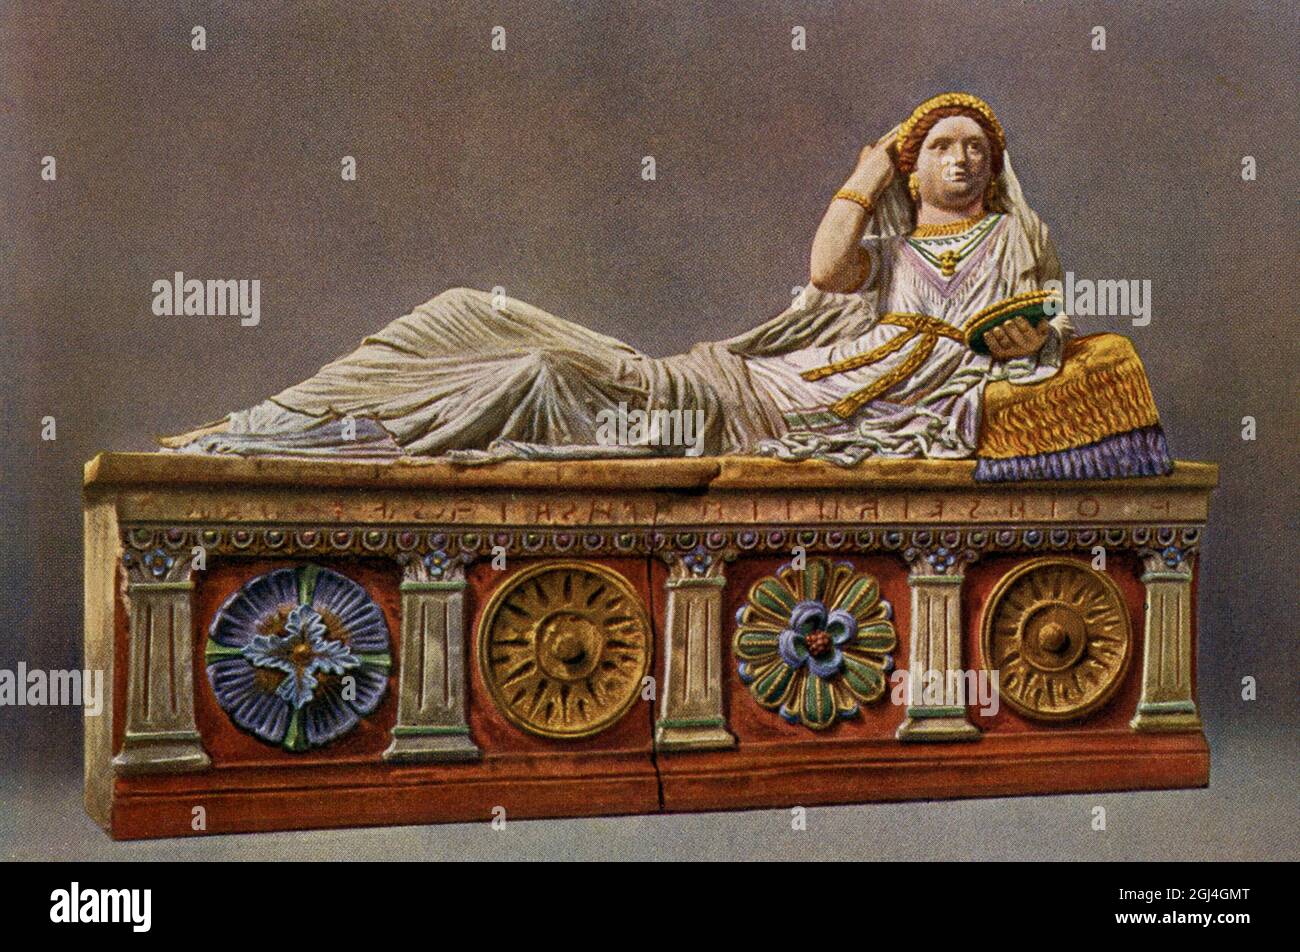 En esta ilustración de 1910 se muestra un sarcófago etrusco de Chiusi. El original se encuentra en el Museo Arqueológico de Florencia. La portada de este sarcófago de terracota representa a Larthia Seianti, una dama rica que vivió en el sur de la Toscana cerca de Chiusi en el segundo siglo antes de Cristo. La mujer es retratada acostada en un kline. Ella está usando una ropa suntuosa y colorida, y su figura está adornada con ricas joyas. Un diadema hecho por flores, presumiblemente una corona, embellece su cabello. Un collar decorado con un medallón que representa la cabeza de Medusa, cuelga alrededor de su cuello. El civil etrusco Foto de stock